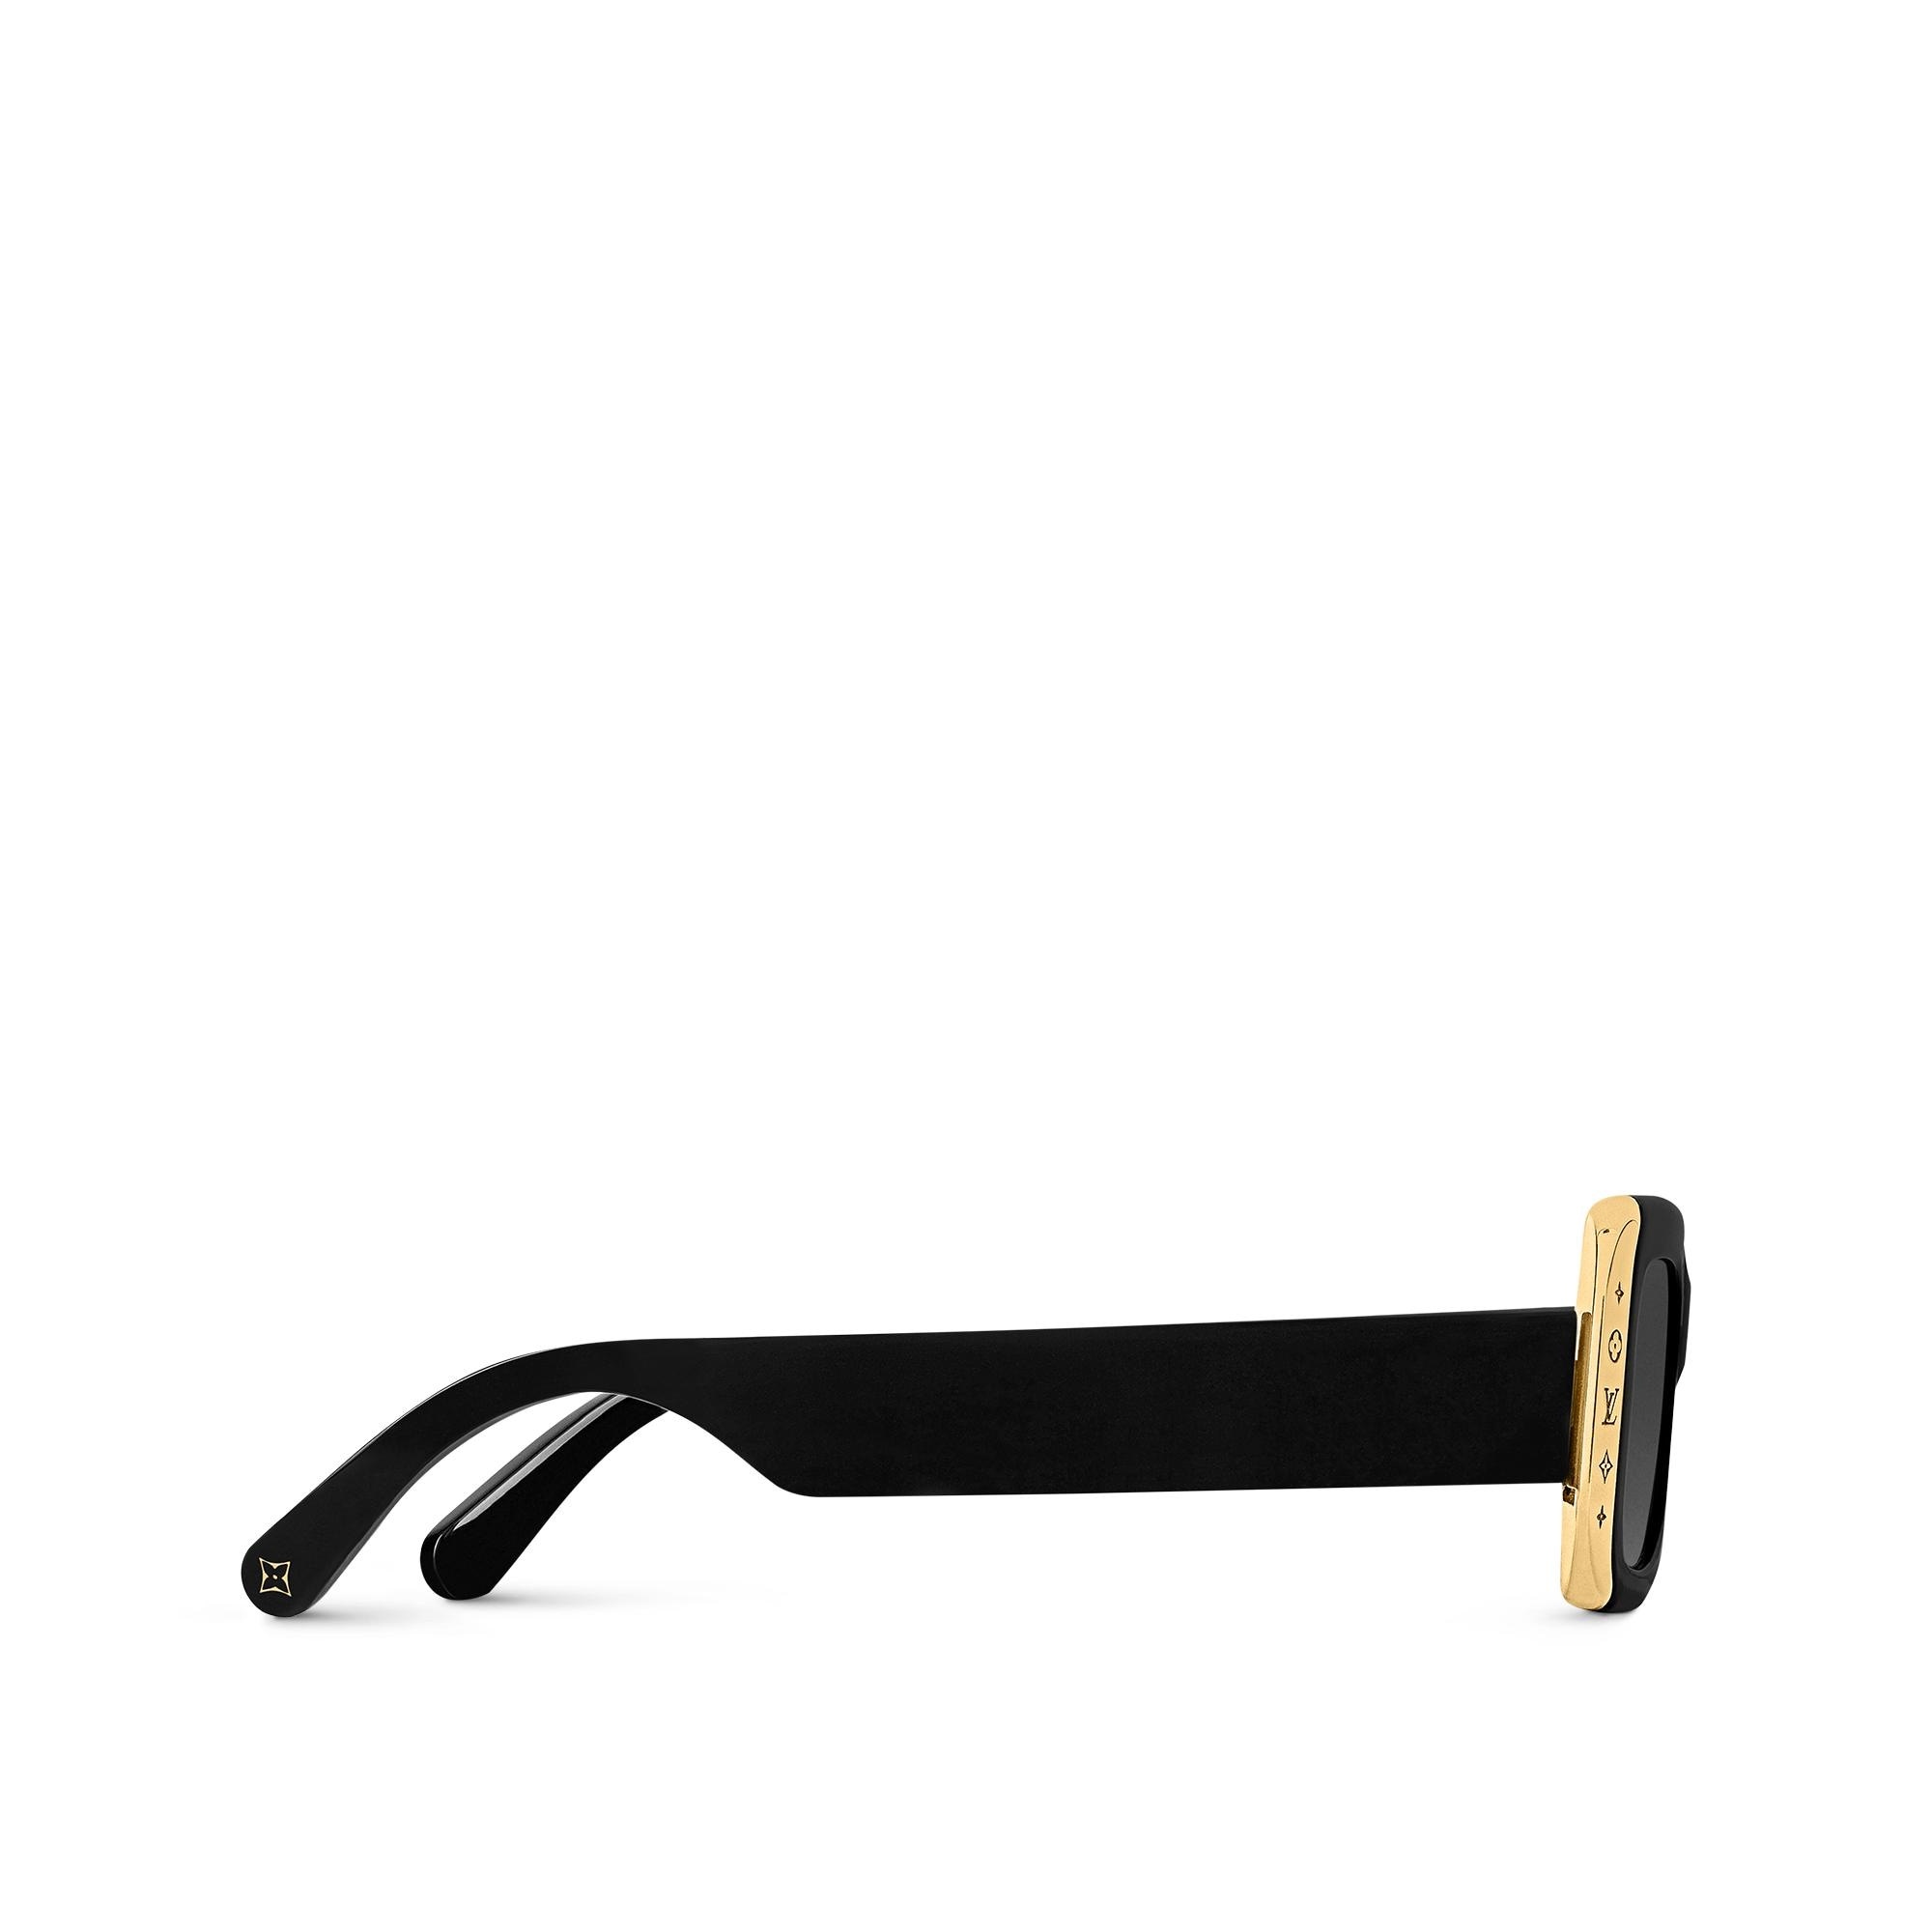 Louis Vuitton LV Moon Square Sunglasses Black Acetate & Metal. Size W